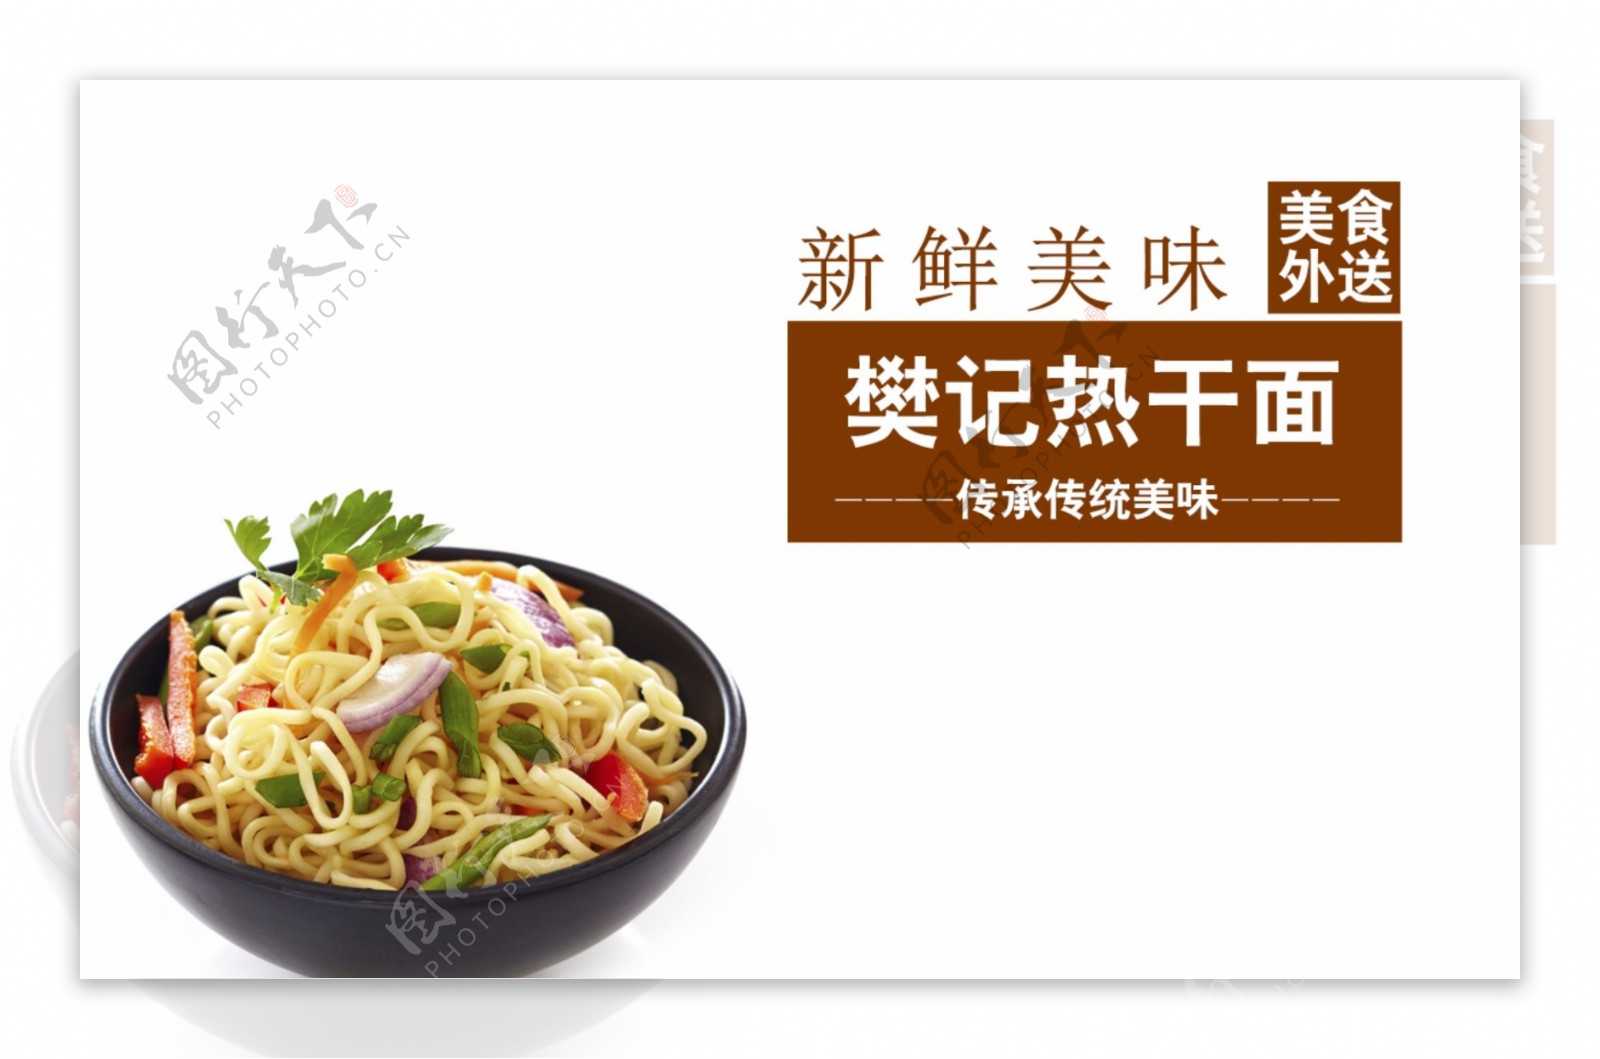 高清PSD樊记热干面美味面食餐饮海报